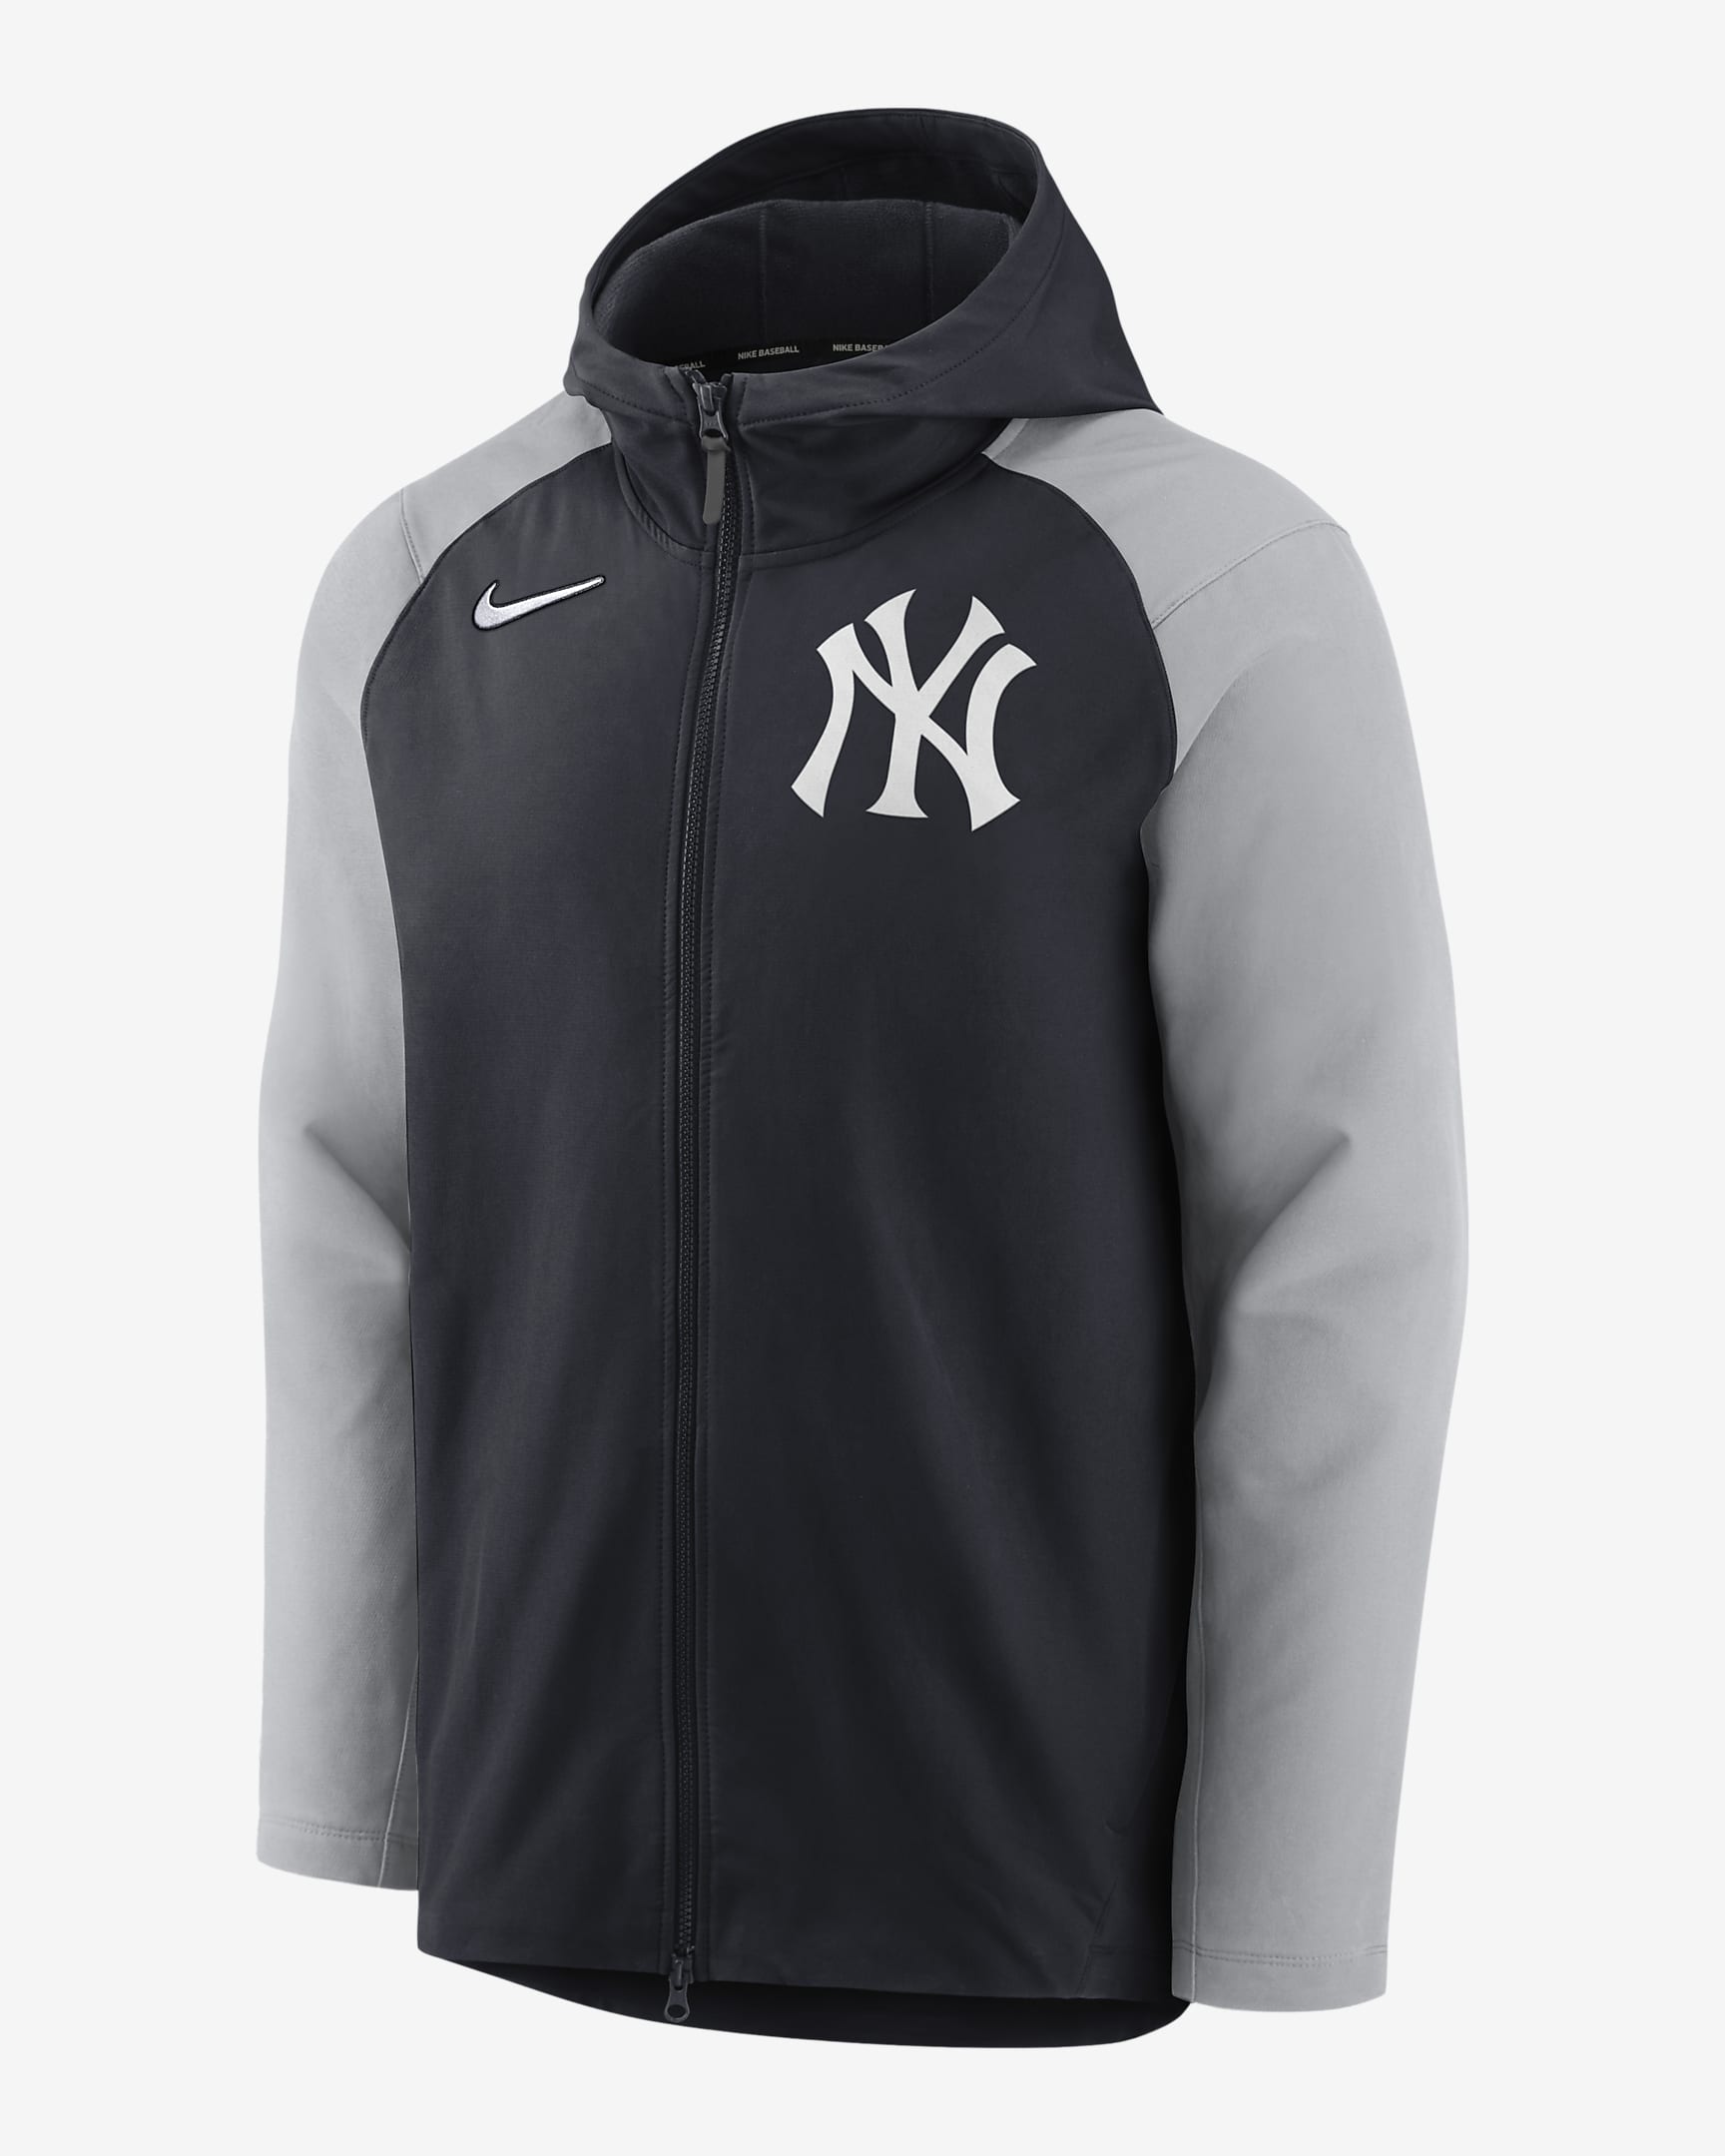 Player New York Yankees Mens Full Zip Jacket PGwrJp 